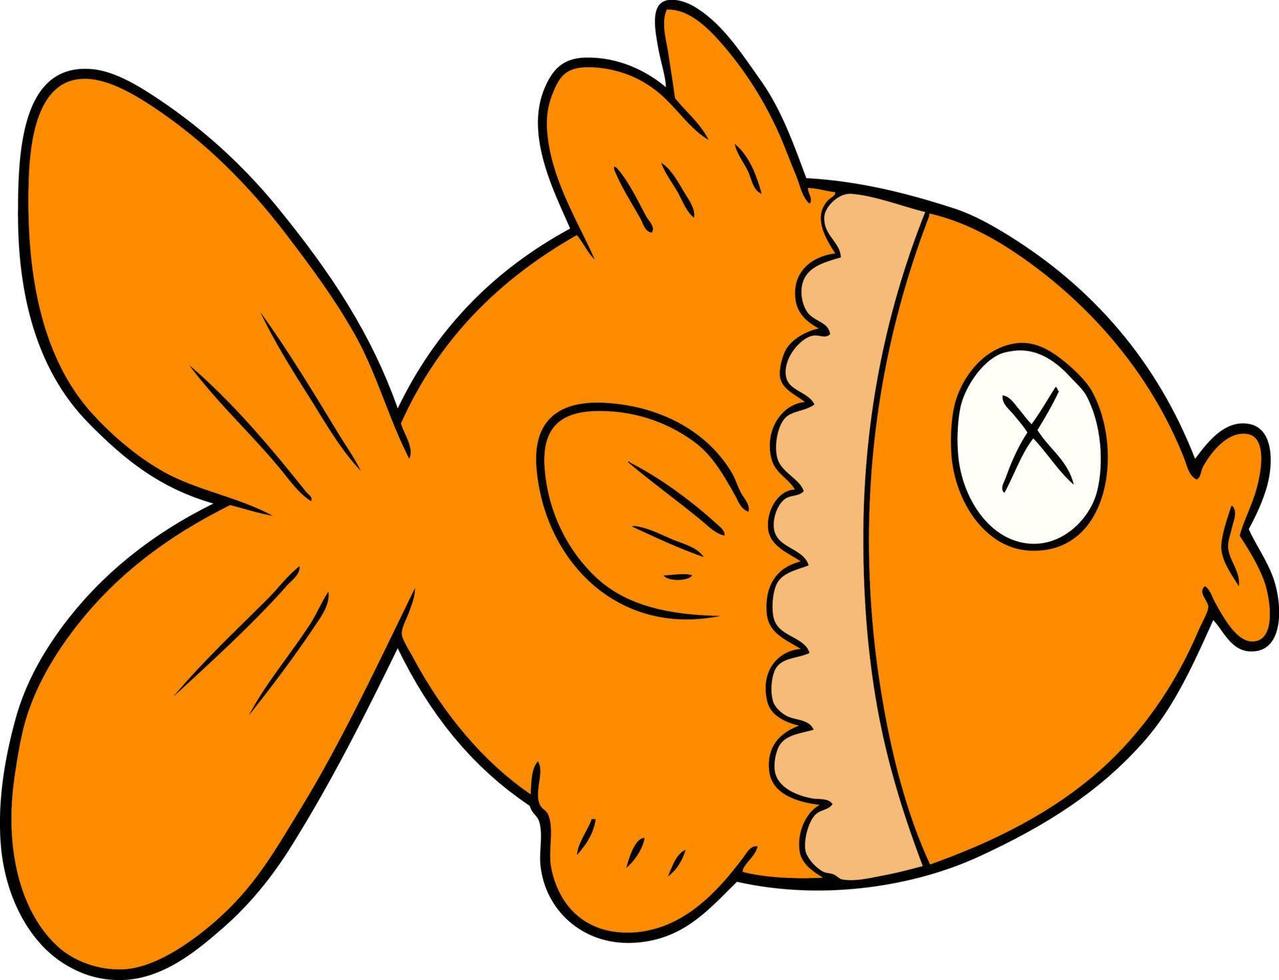 peixinho dourado dos desenhos animados de estilo de cor plana vetor